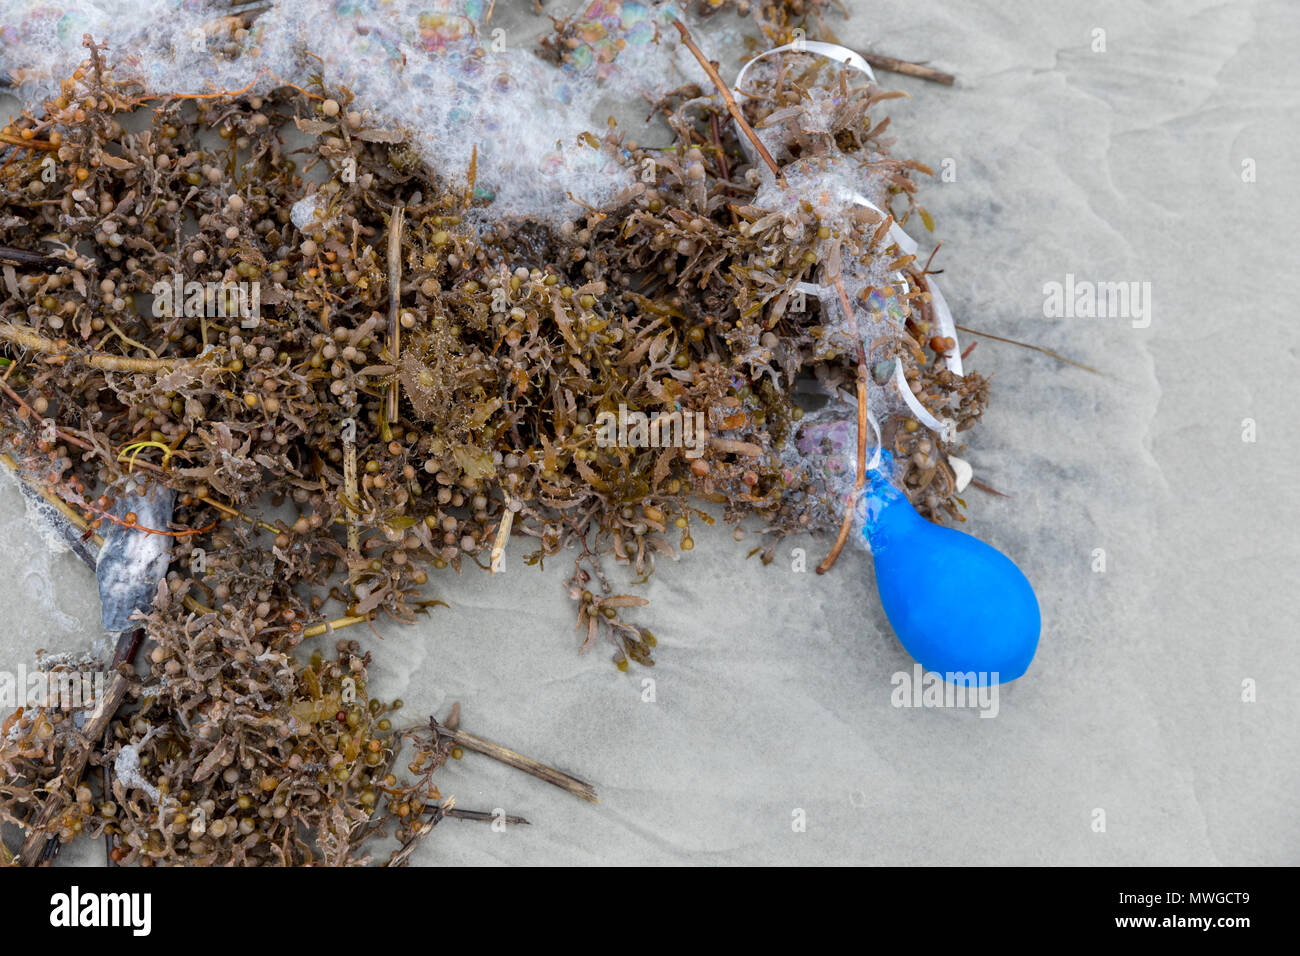 Eine blaue Ballon in Seetang verheddert gewaschen am Strand Stockfoto